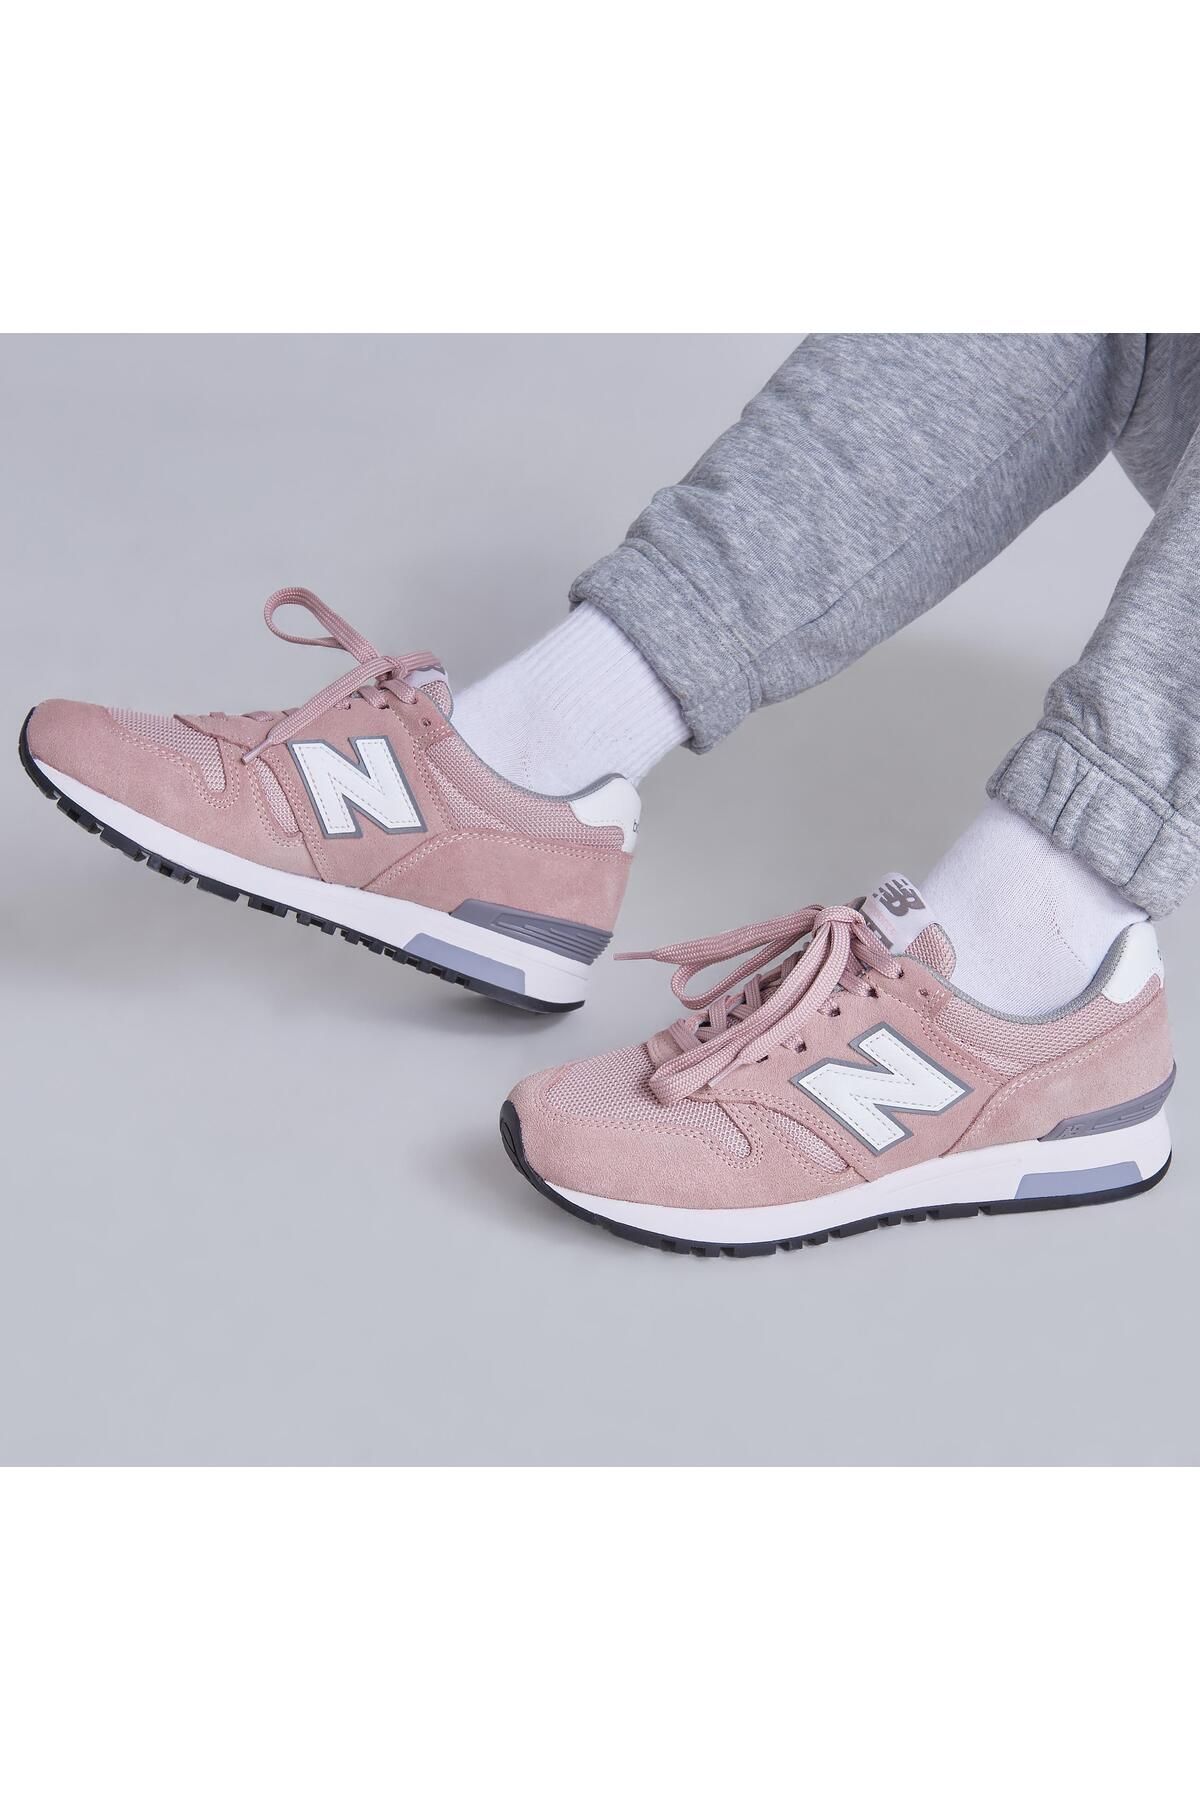 New Balance 565 Rose Pink Kadın Sneaker Günlük Spor Ayakkabı